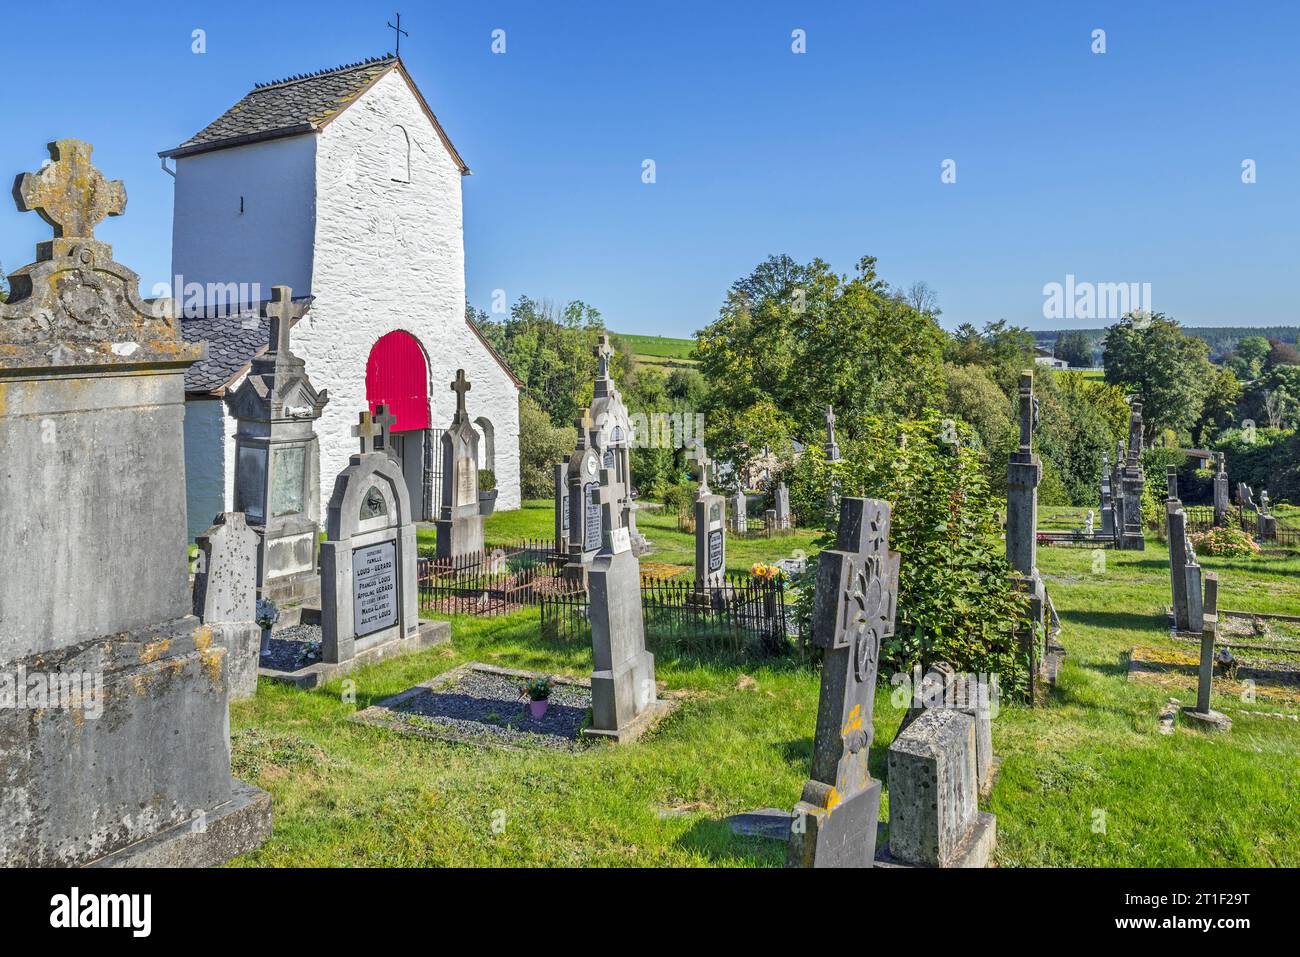 Chapelle Saint-Marguerite del siglo XII y cementerio en el pueblo Ollomont, Houffalize, provincia de Luxemburgo, Ardenas belgas, Valonia, Bélgica Foto de stock